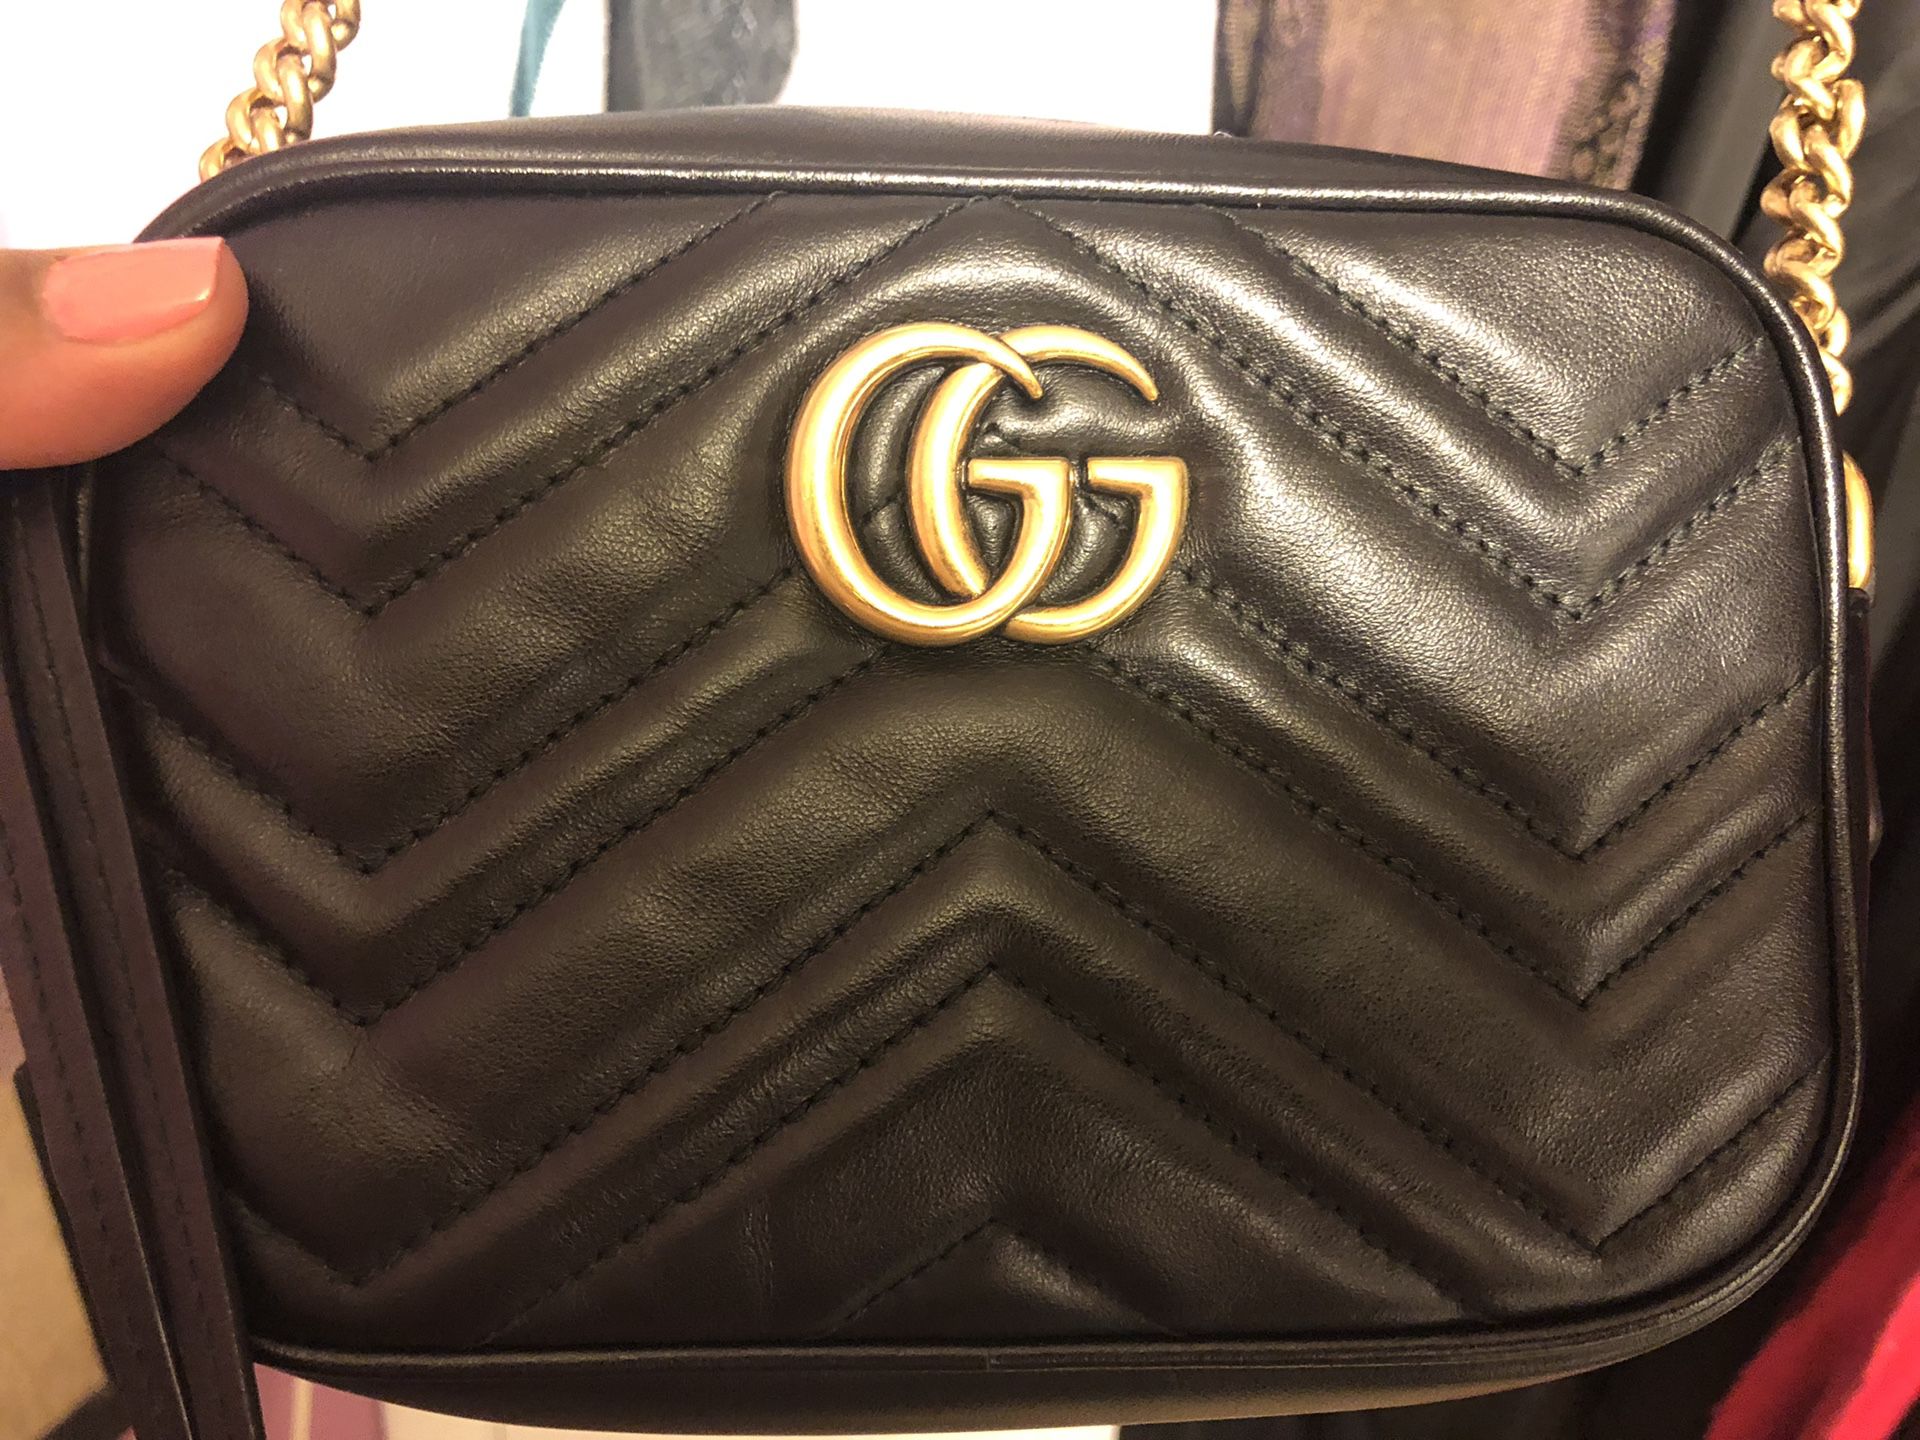 Gucci bag $890